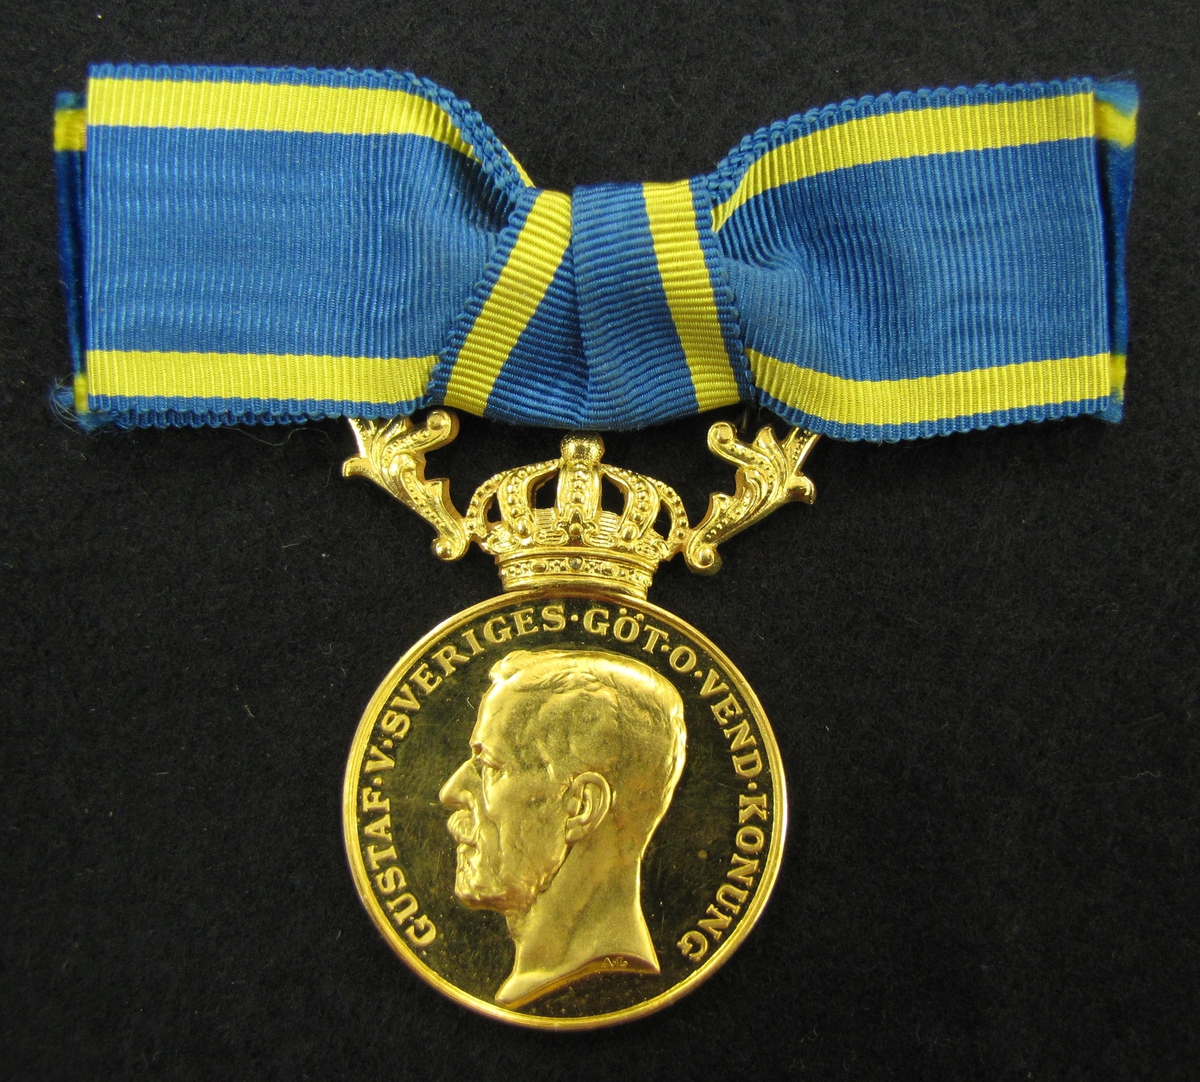 Medalj till Emmy Helena Anna Helander för nit och redlighet i rikets tjänst.  Finns ett etui till medaljen (VM09633:c). 

Medaljen är av 23 K guld försedd med krona och bärornament av 18 K guld.